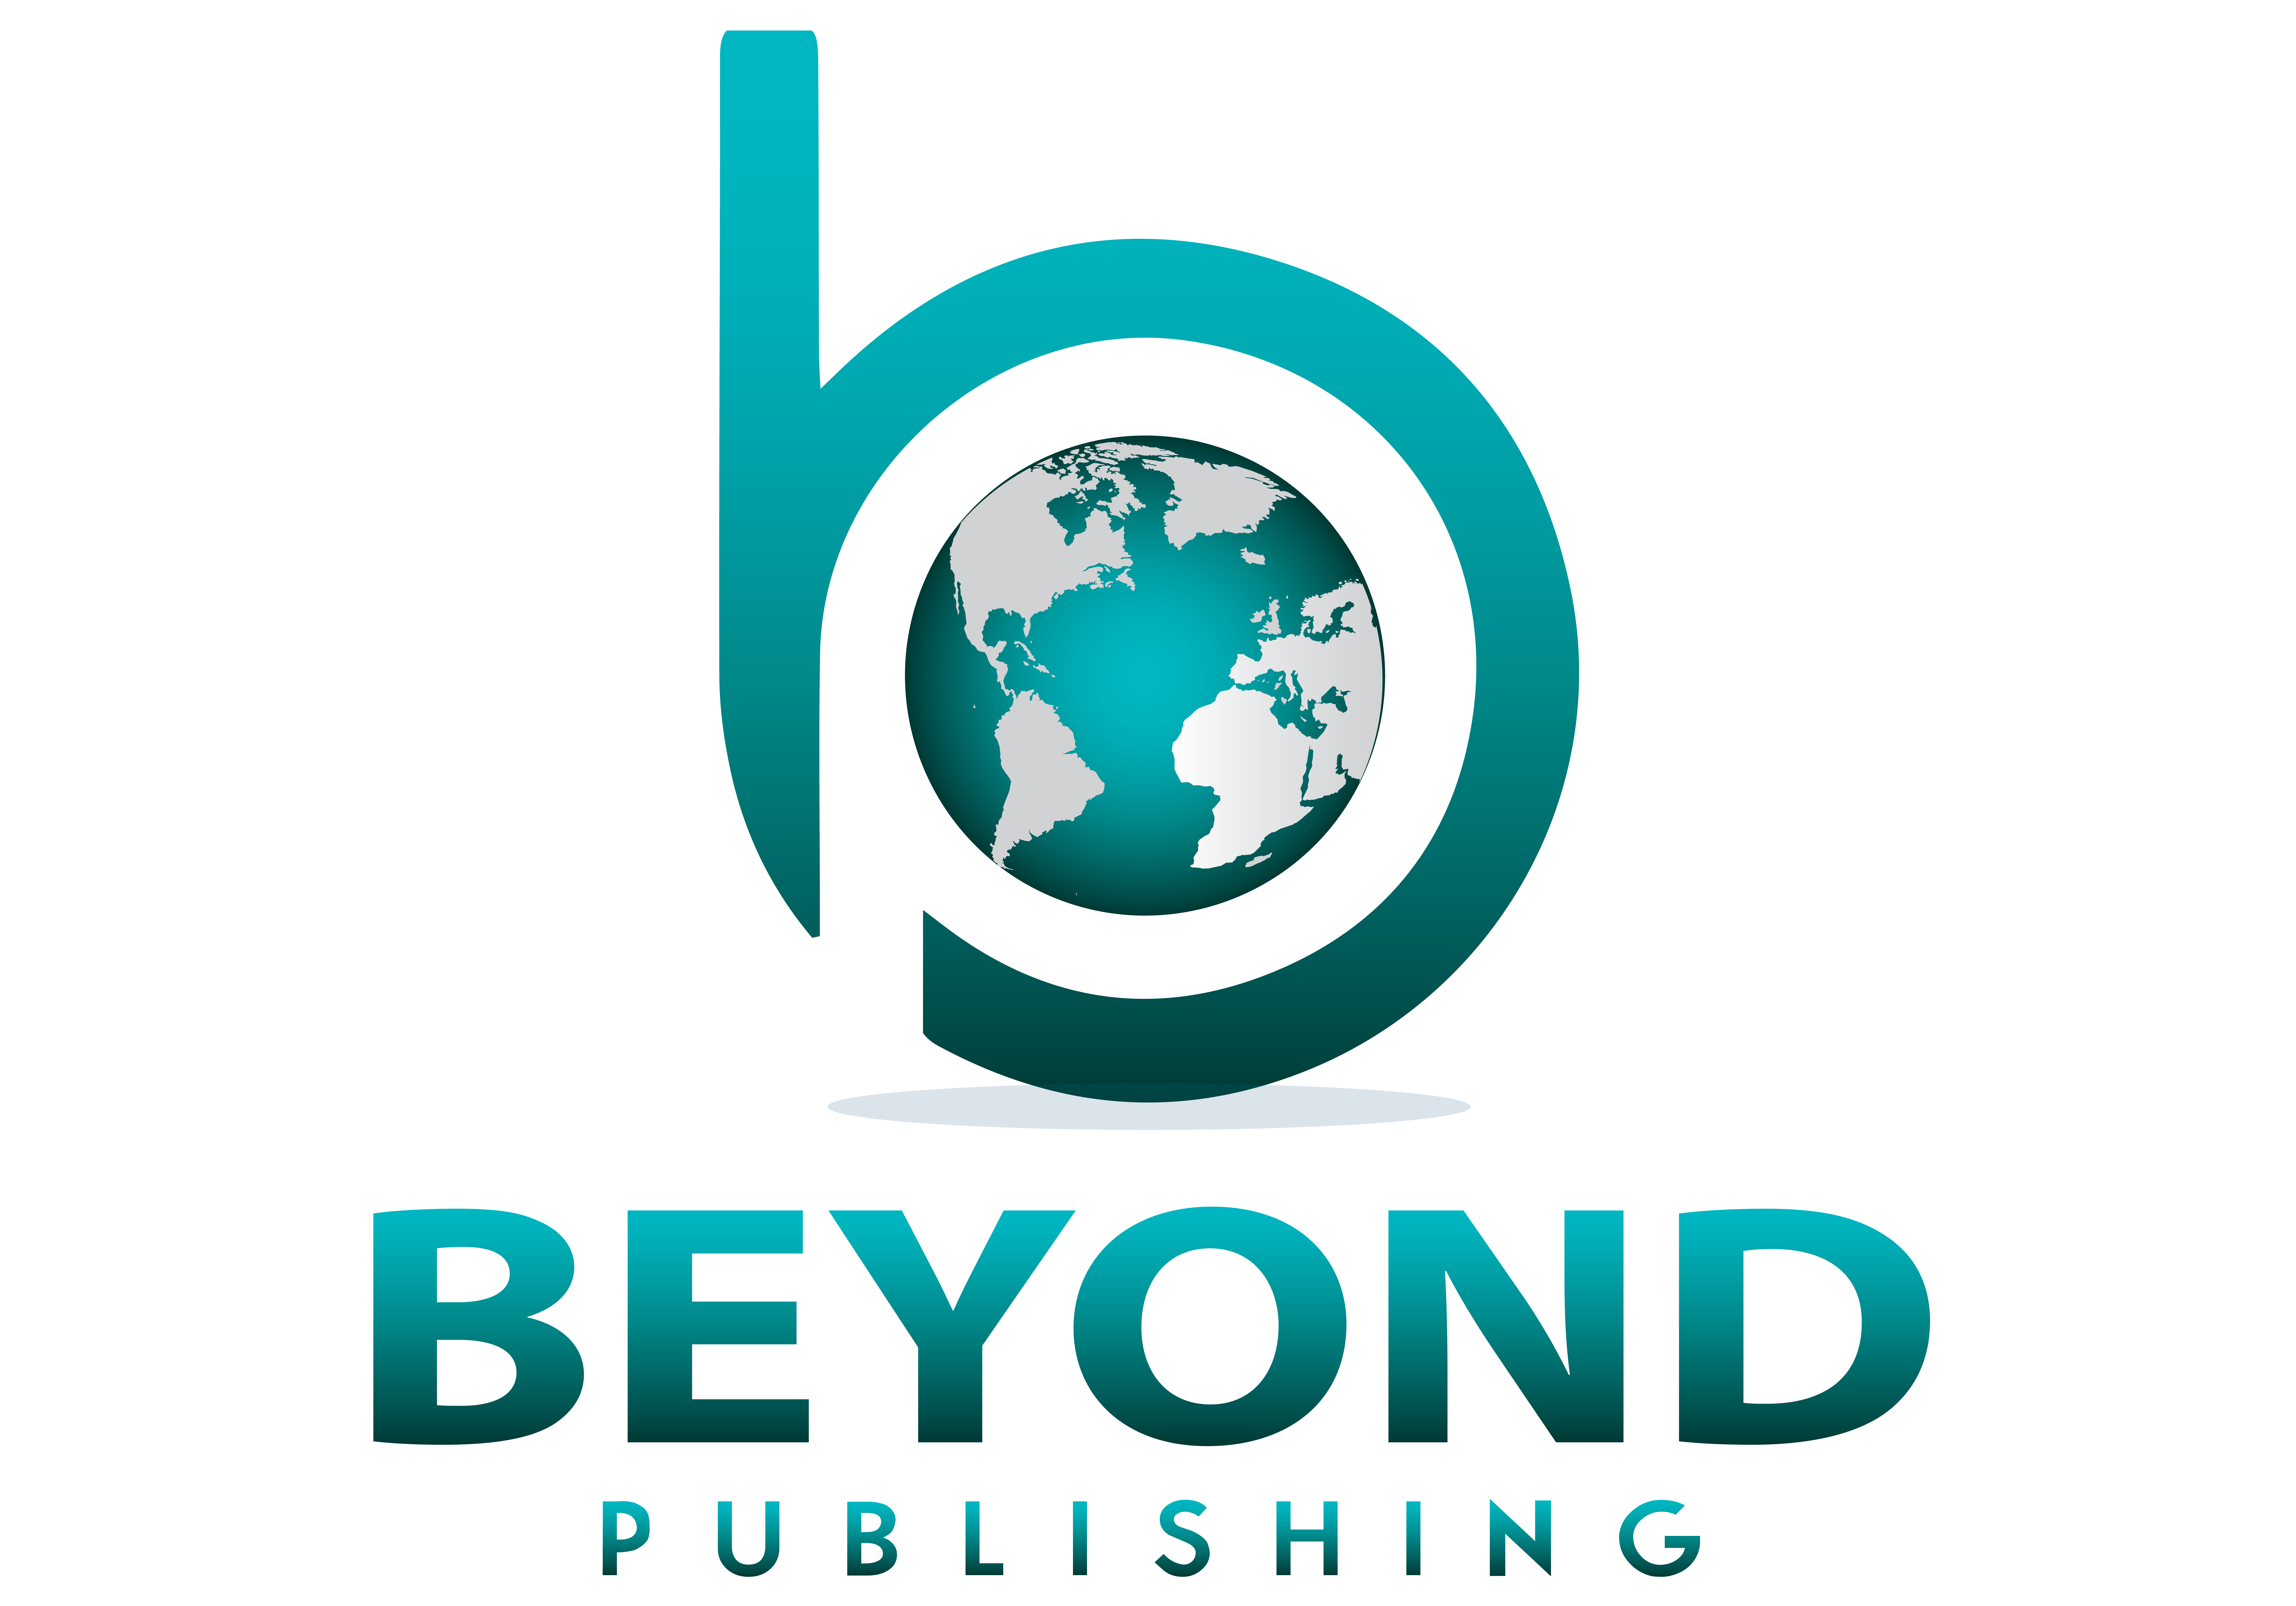 BEYOND PUBLISHING GLOBAL AUTHOR HYBRID BOOK PUBLISHING